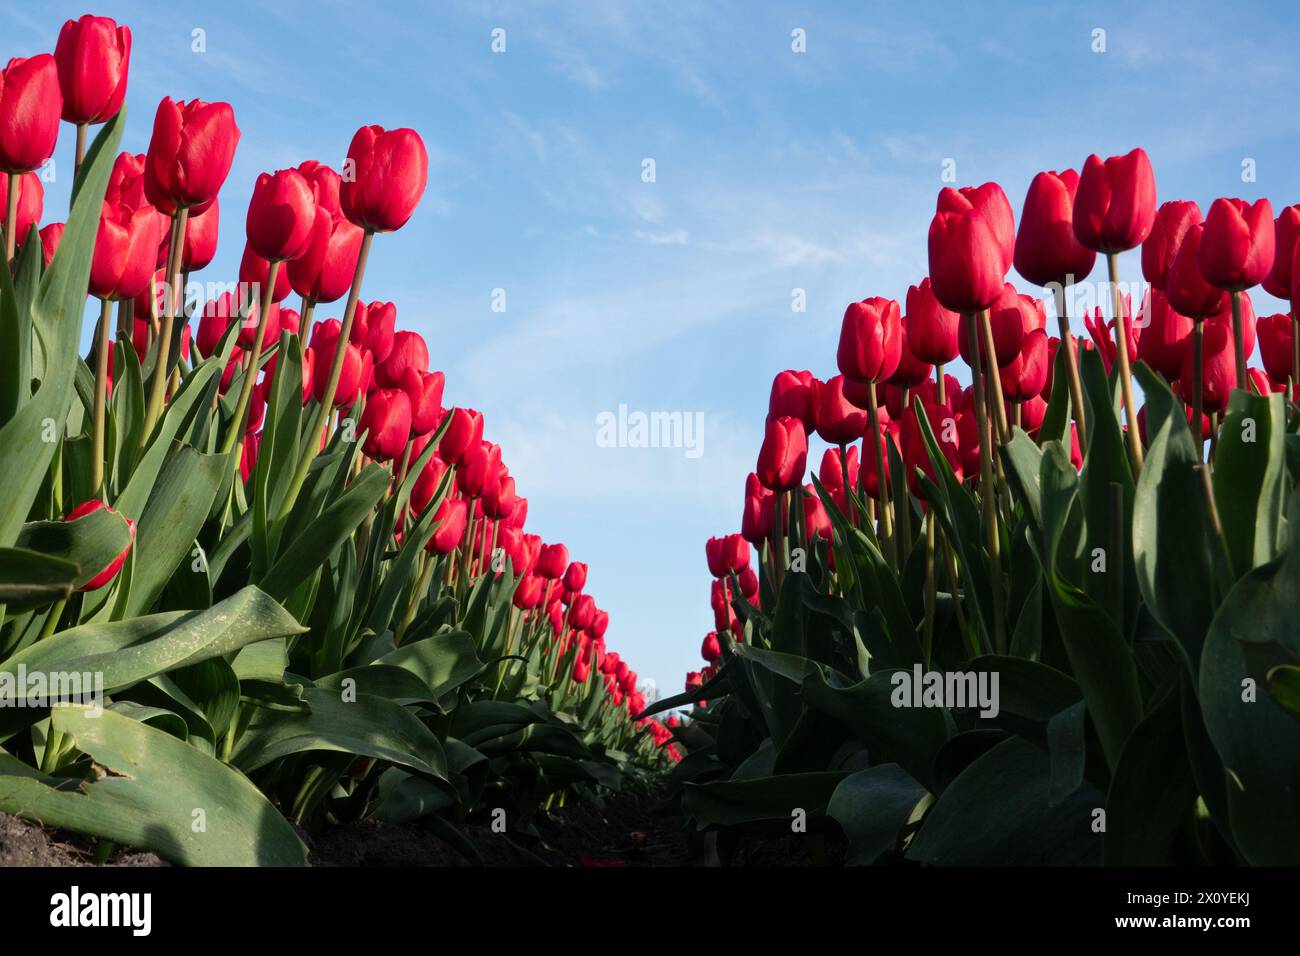 Vue entre deux rangées de tulipes roses sous un ciel bleu d'un point de vue bas Banque D'Images